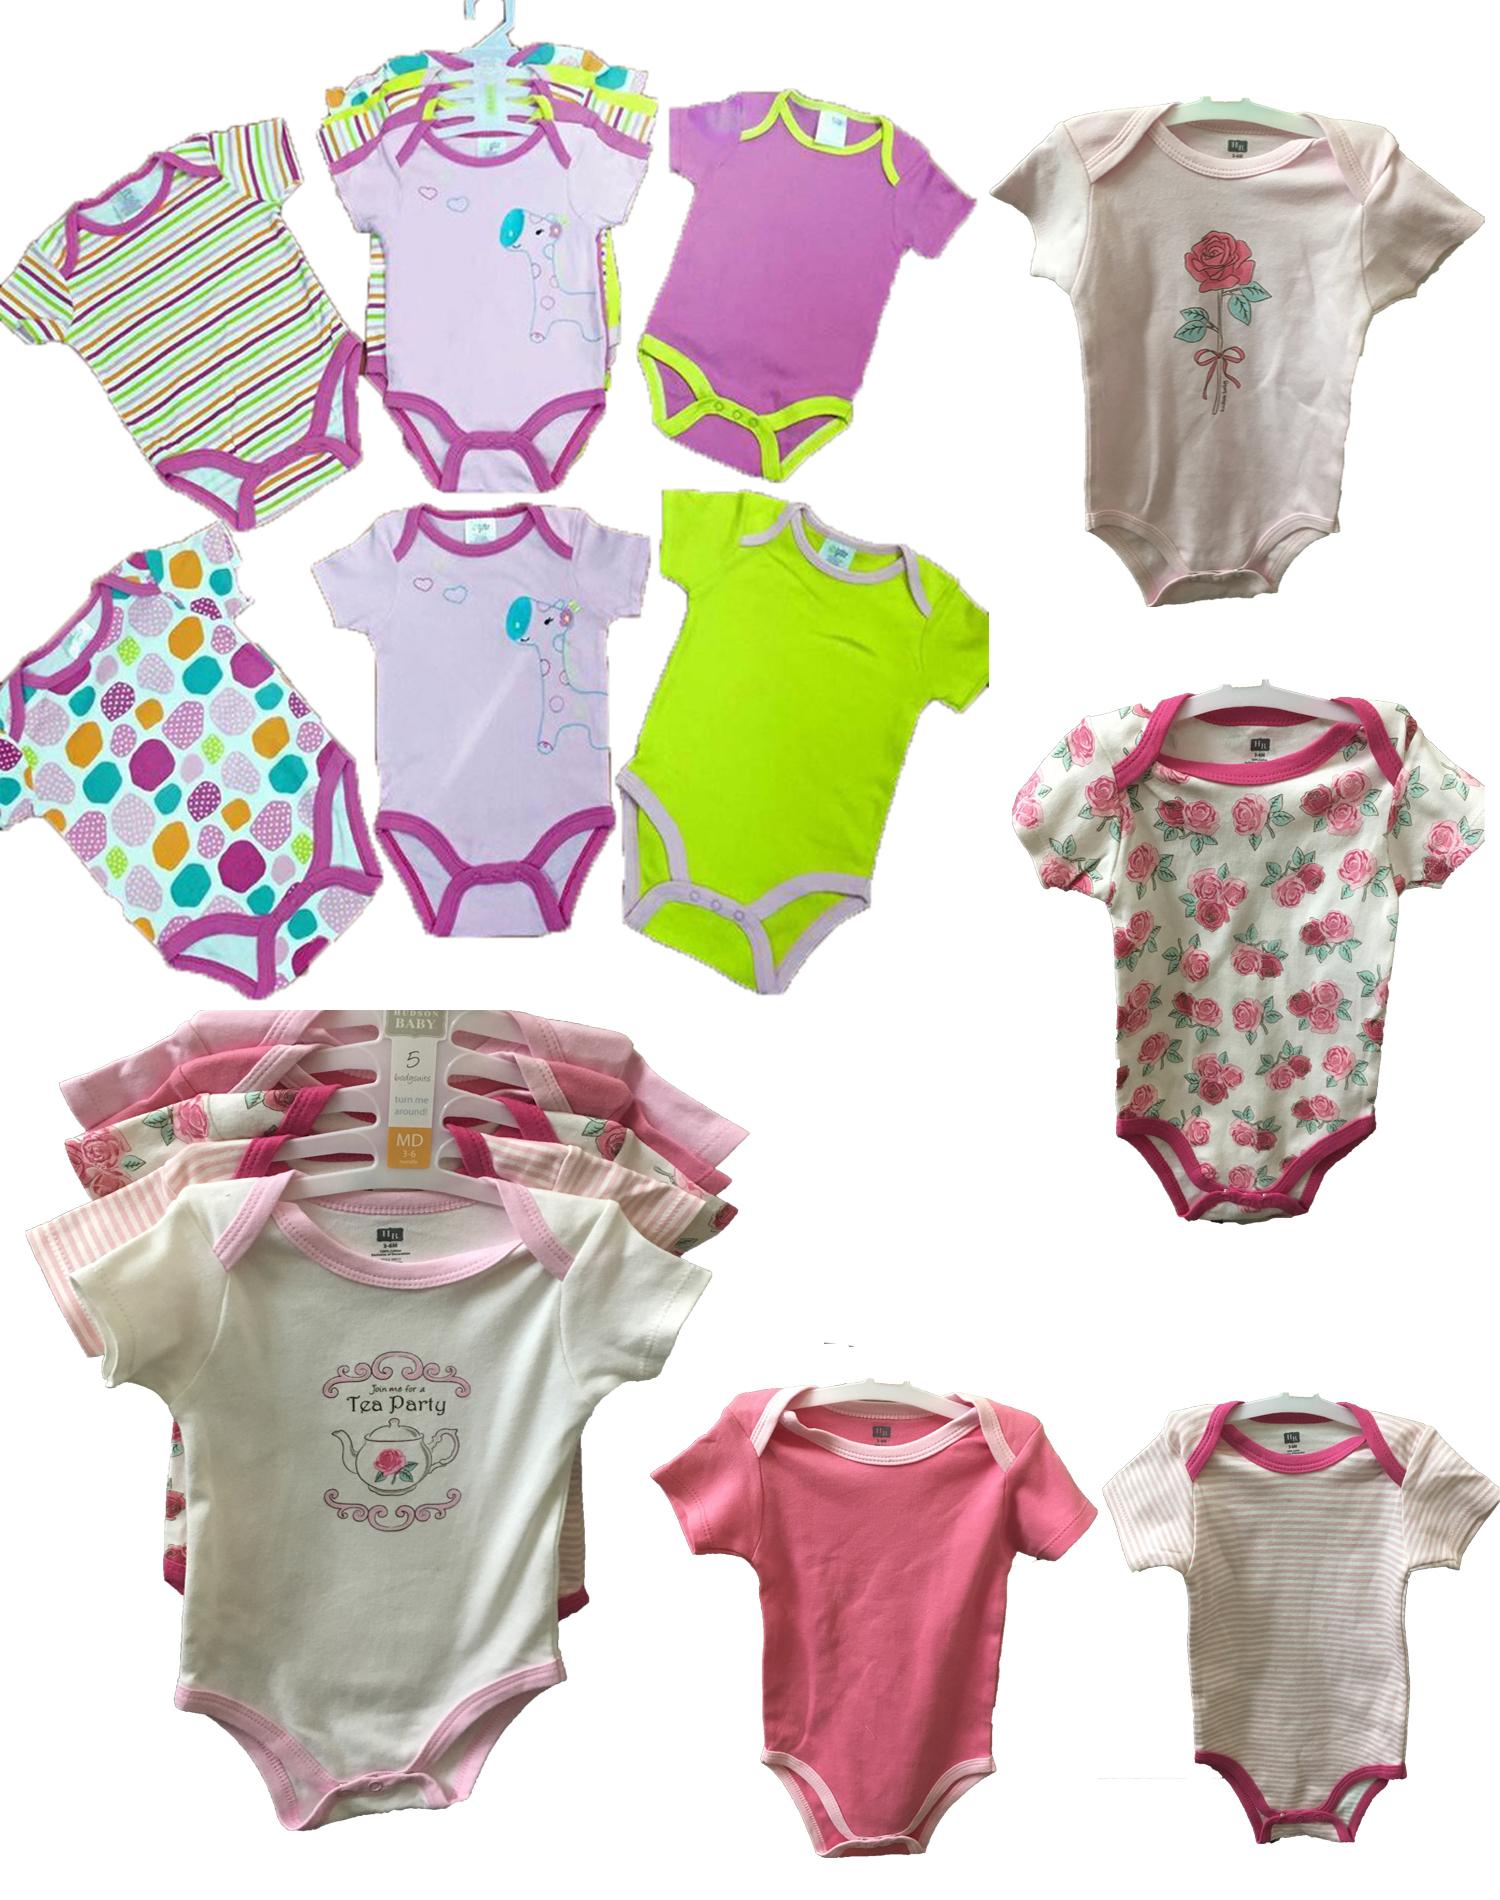 Bộ quần áo liền quần body suite Baby Gear cho bé trai từ 3-6 tháng mầu sắc